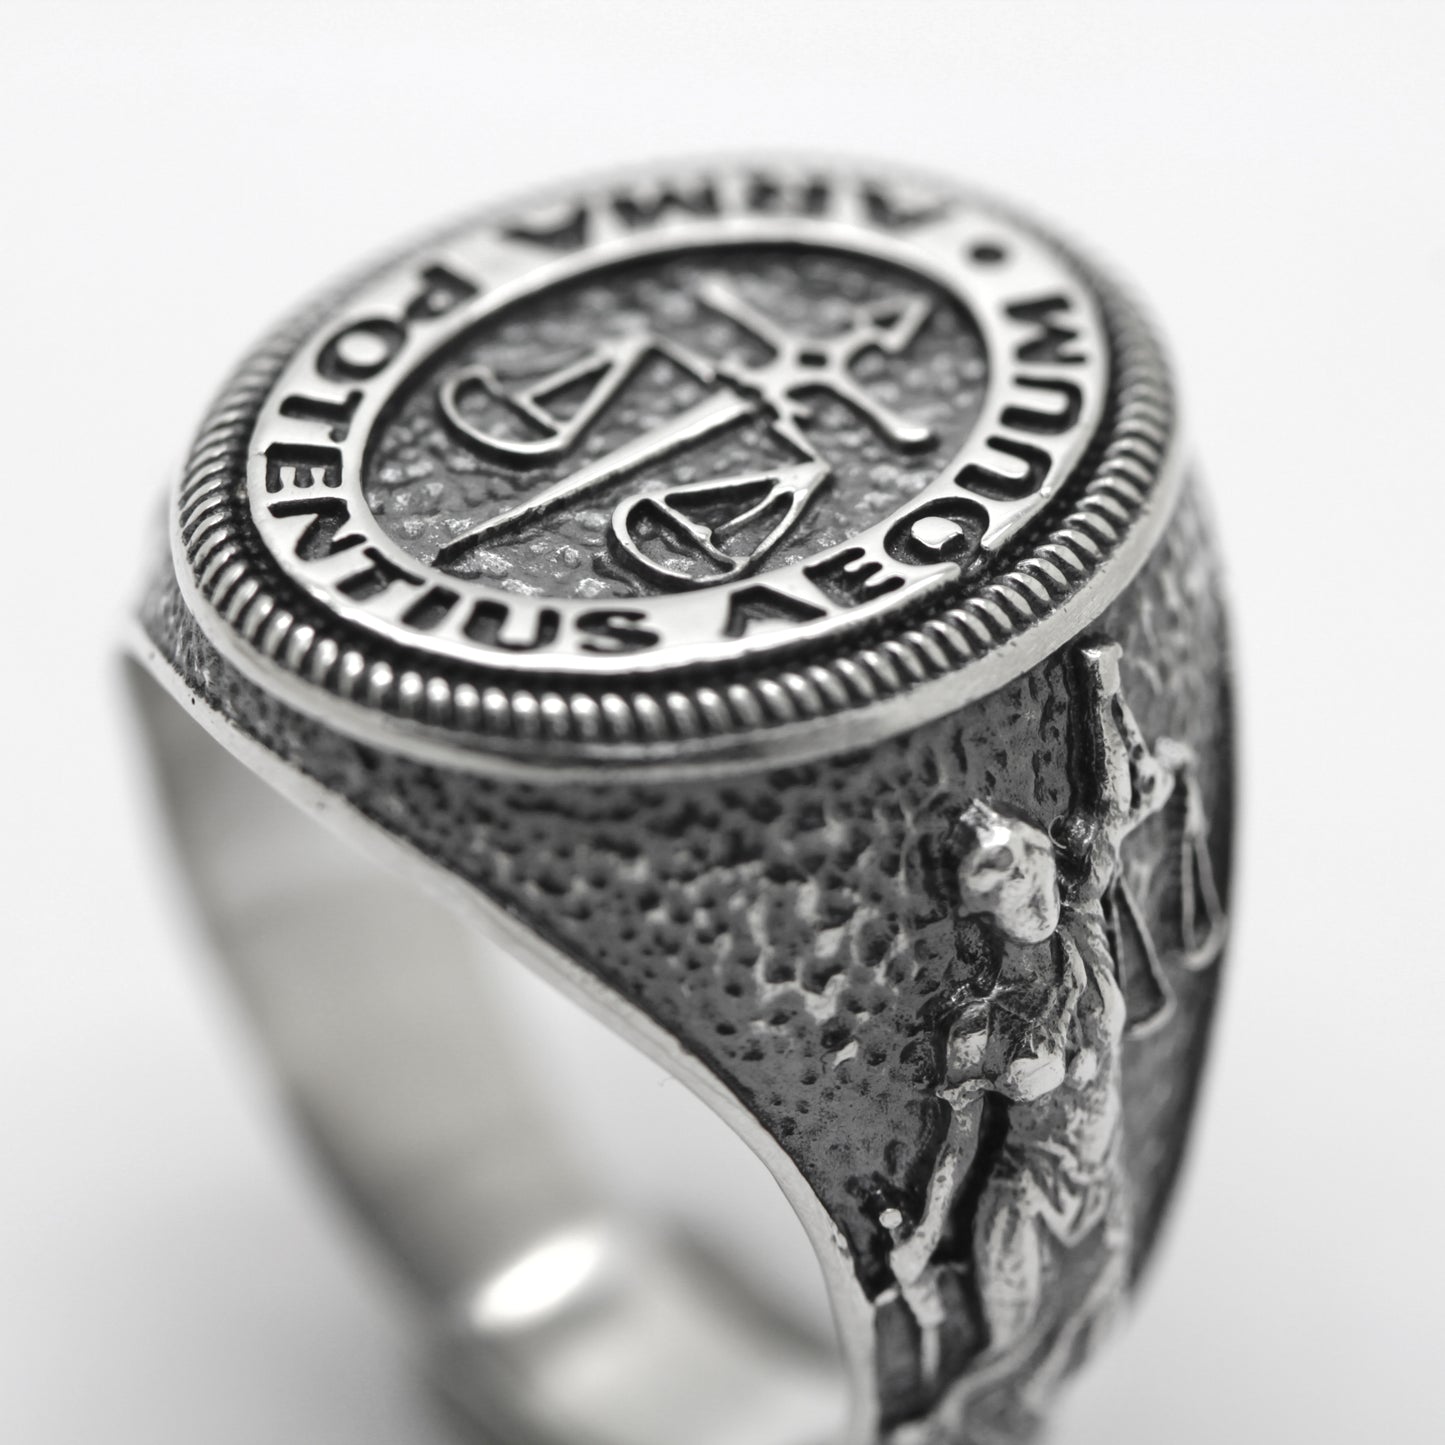 Themis řecká bohyně spravedlnosti, dáma spravedlnosti, právník dárek, stříbrný pečetní prsten 